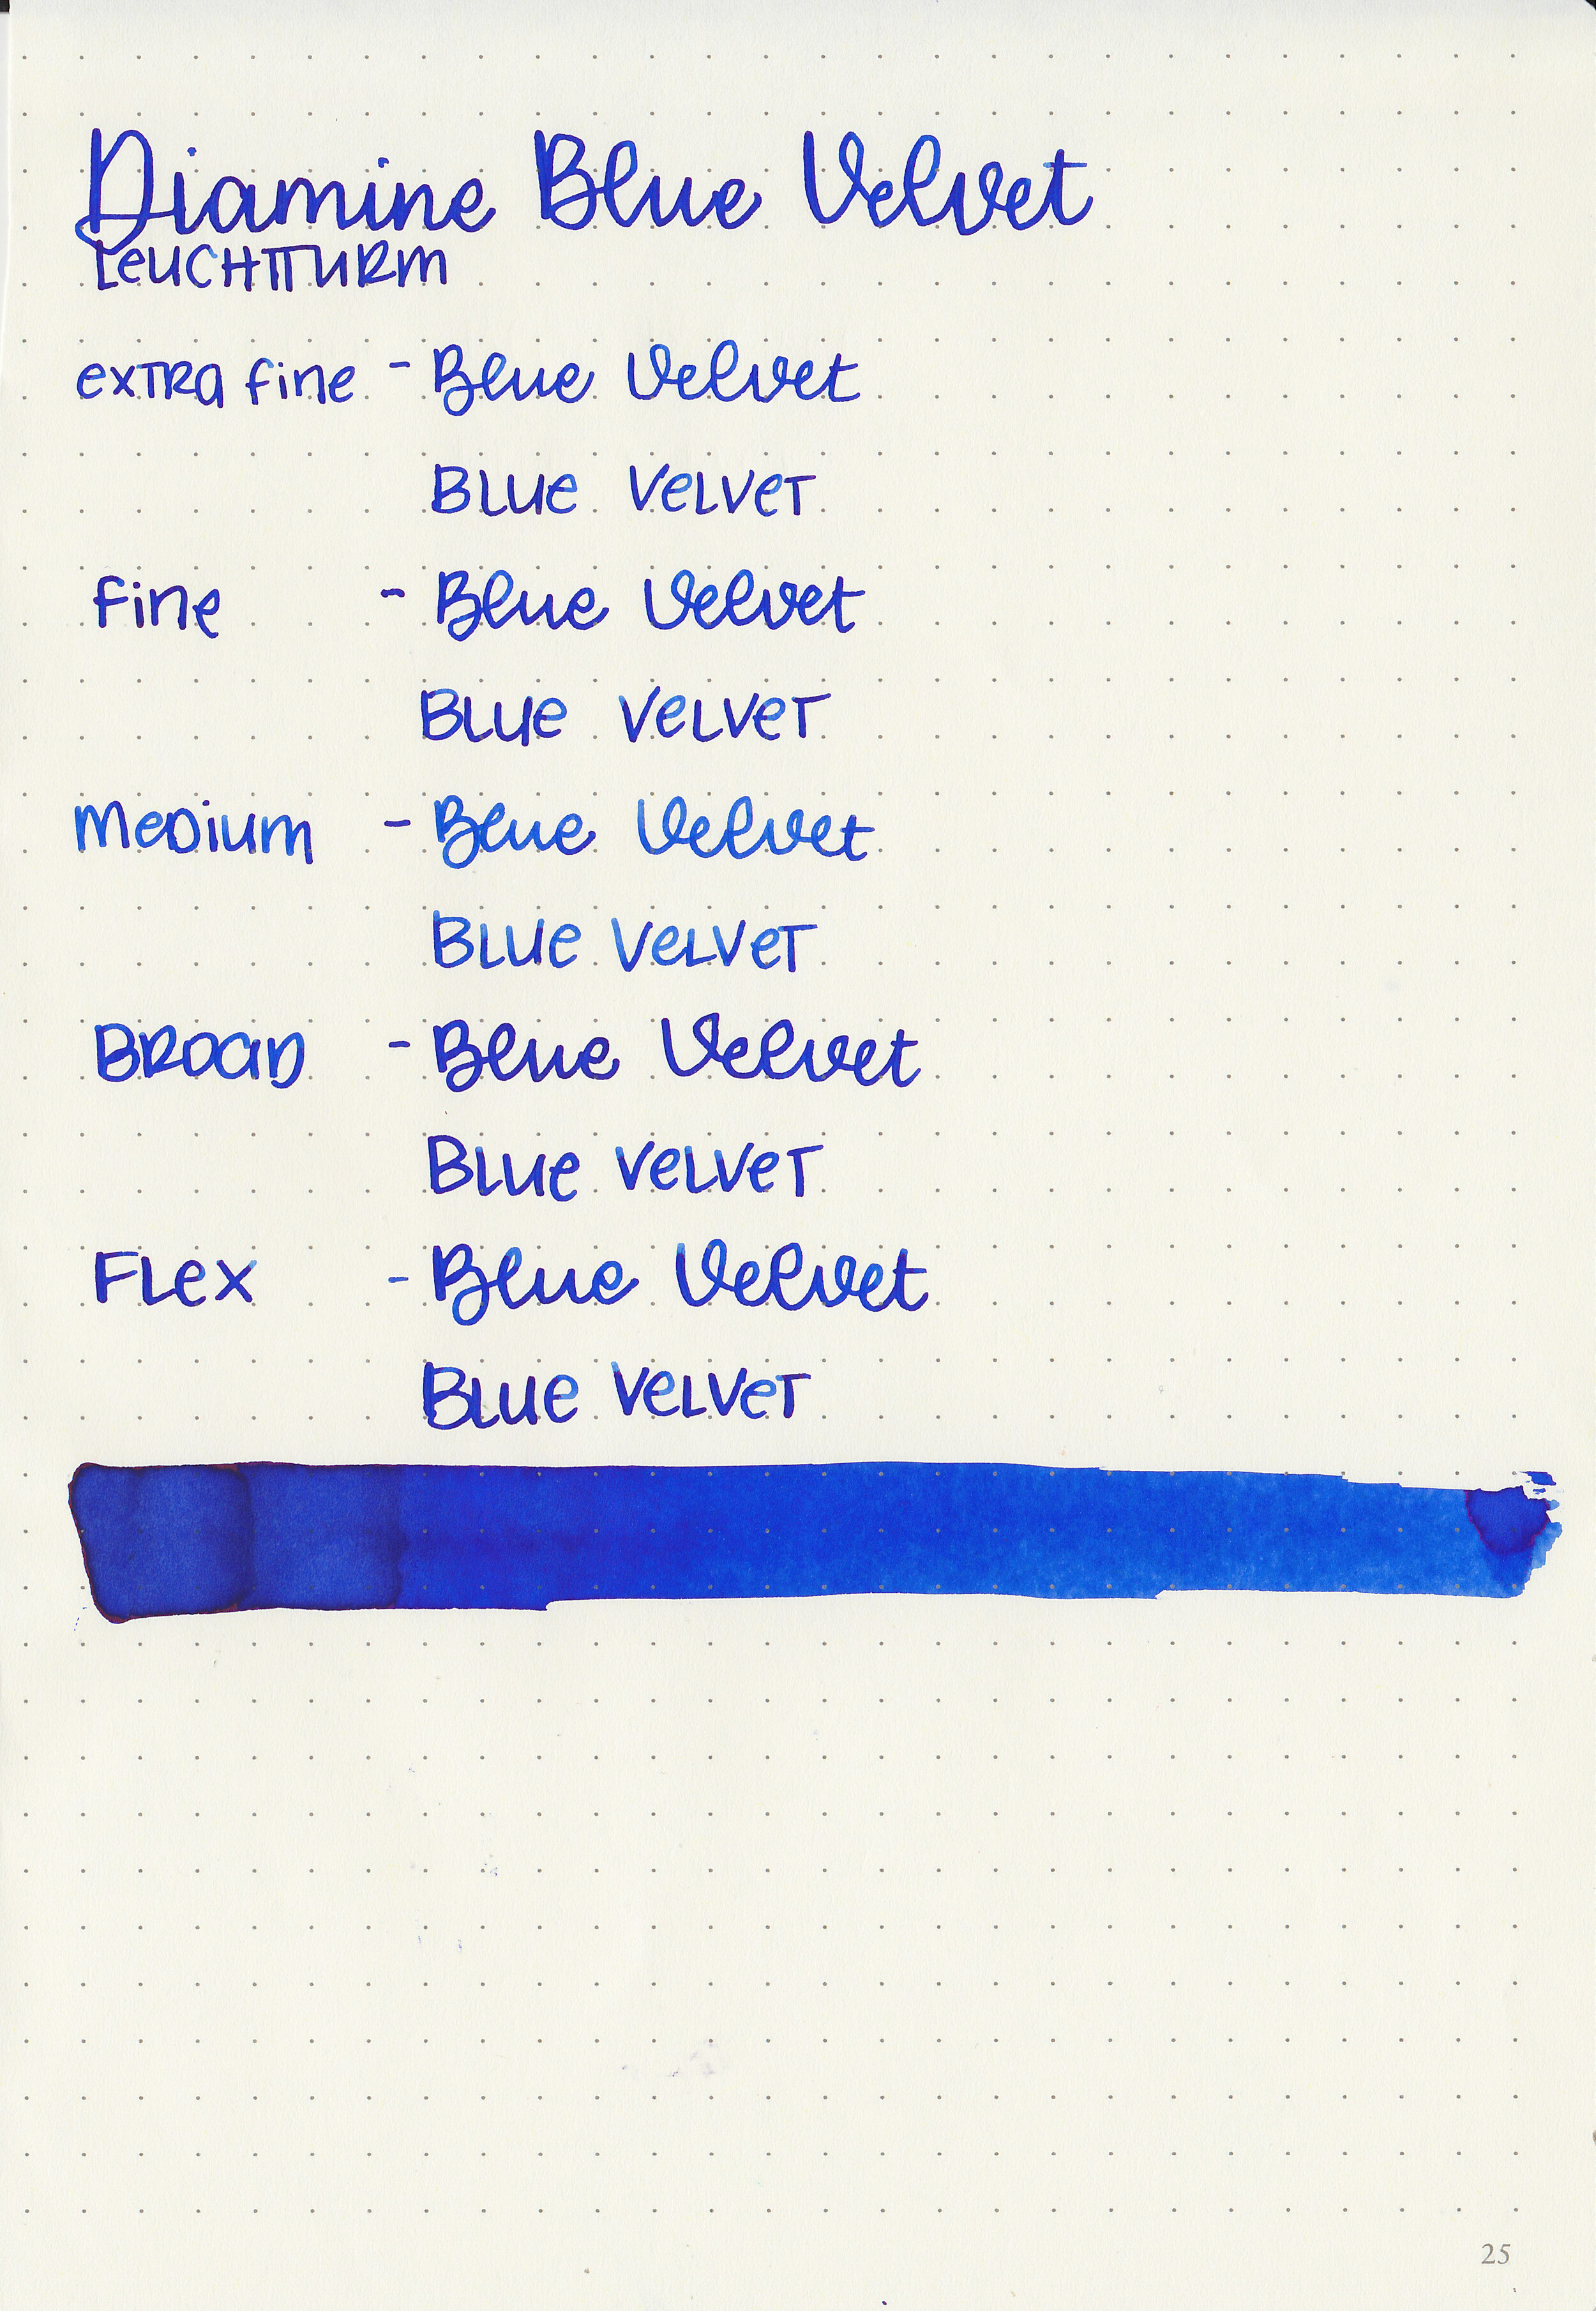 d-blue-velvet-9.jpg